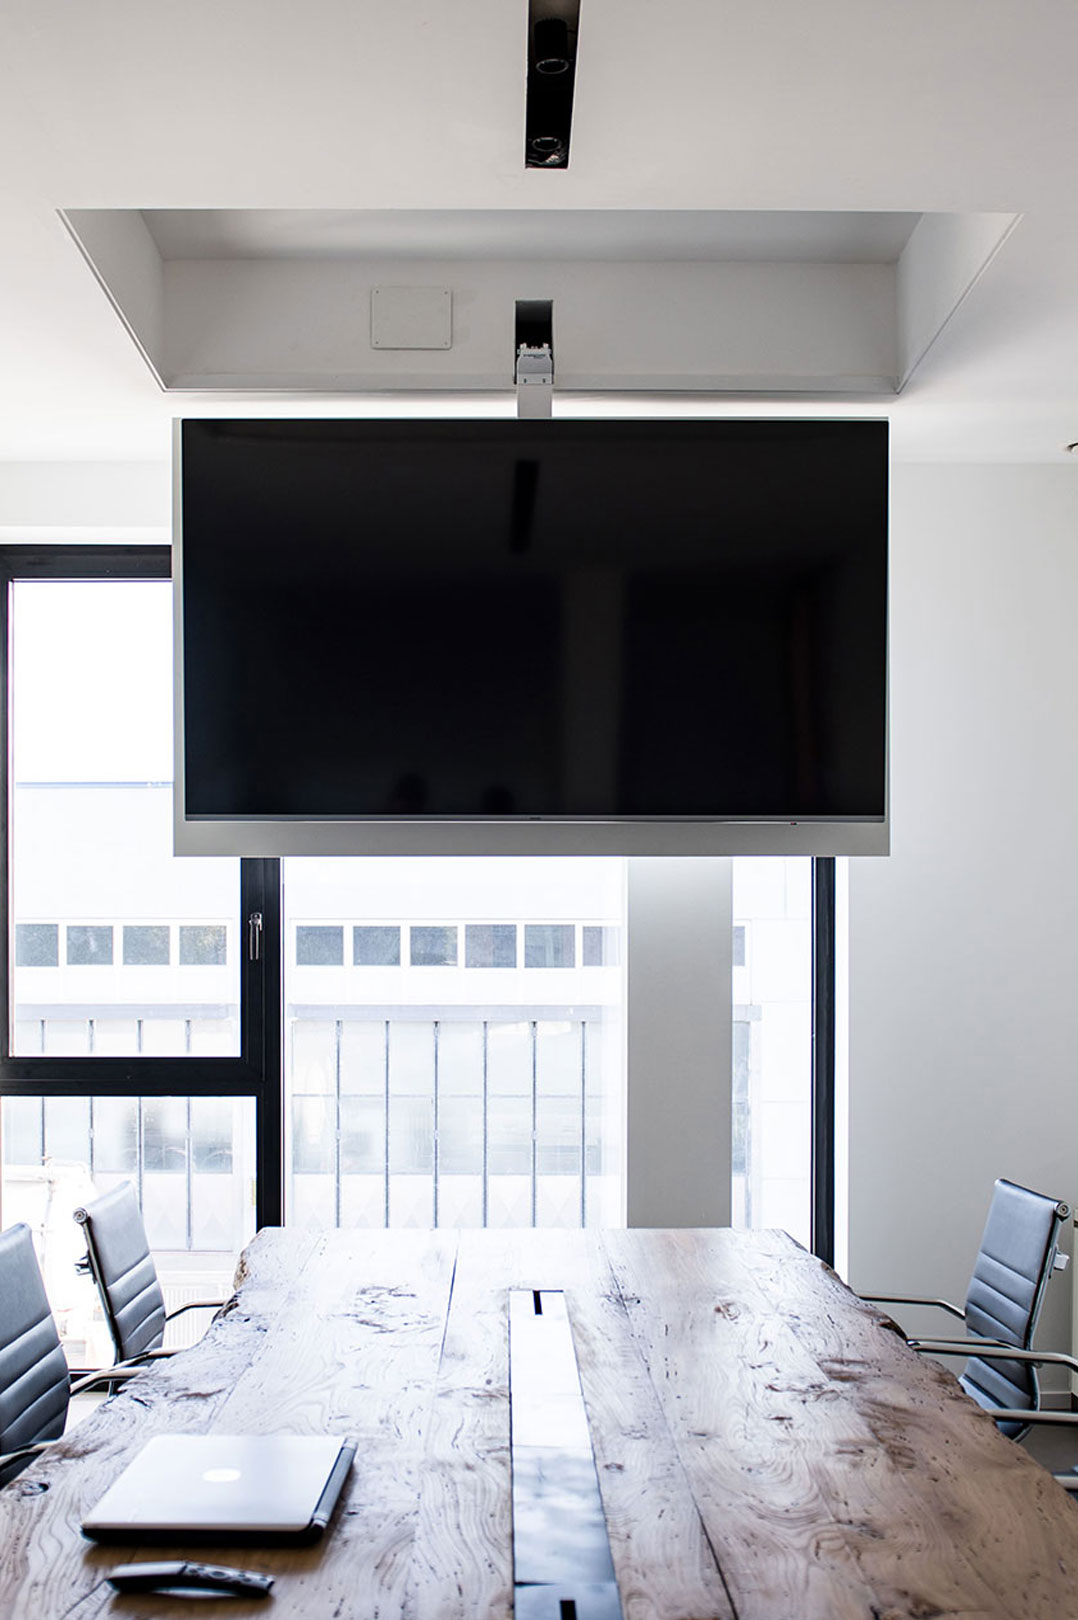 Venta al por mayor retráctil motorizado flip pantalla plana tv montaje de  techo de todos los tamaños para cualquier espacio - Alibaba.com